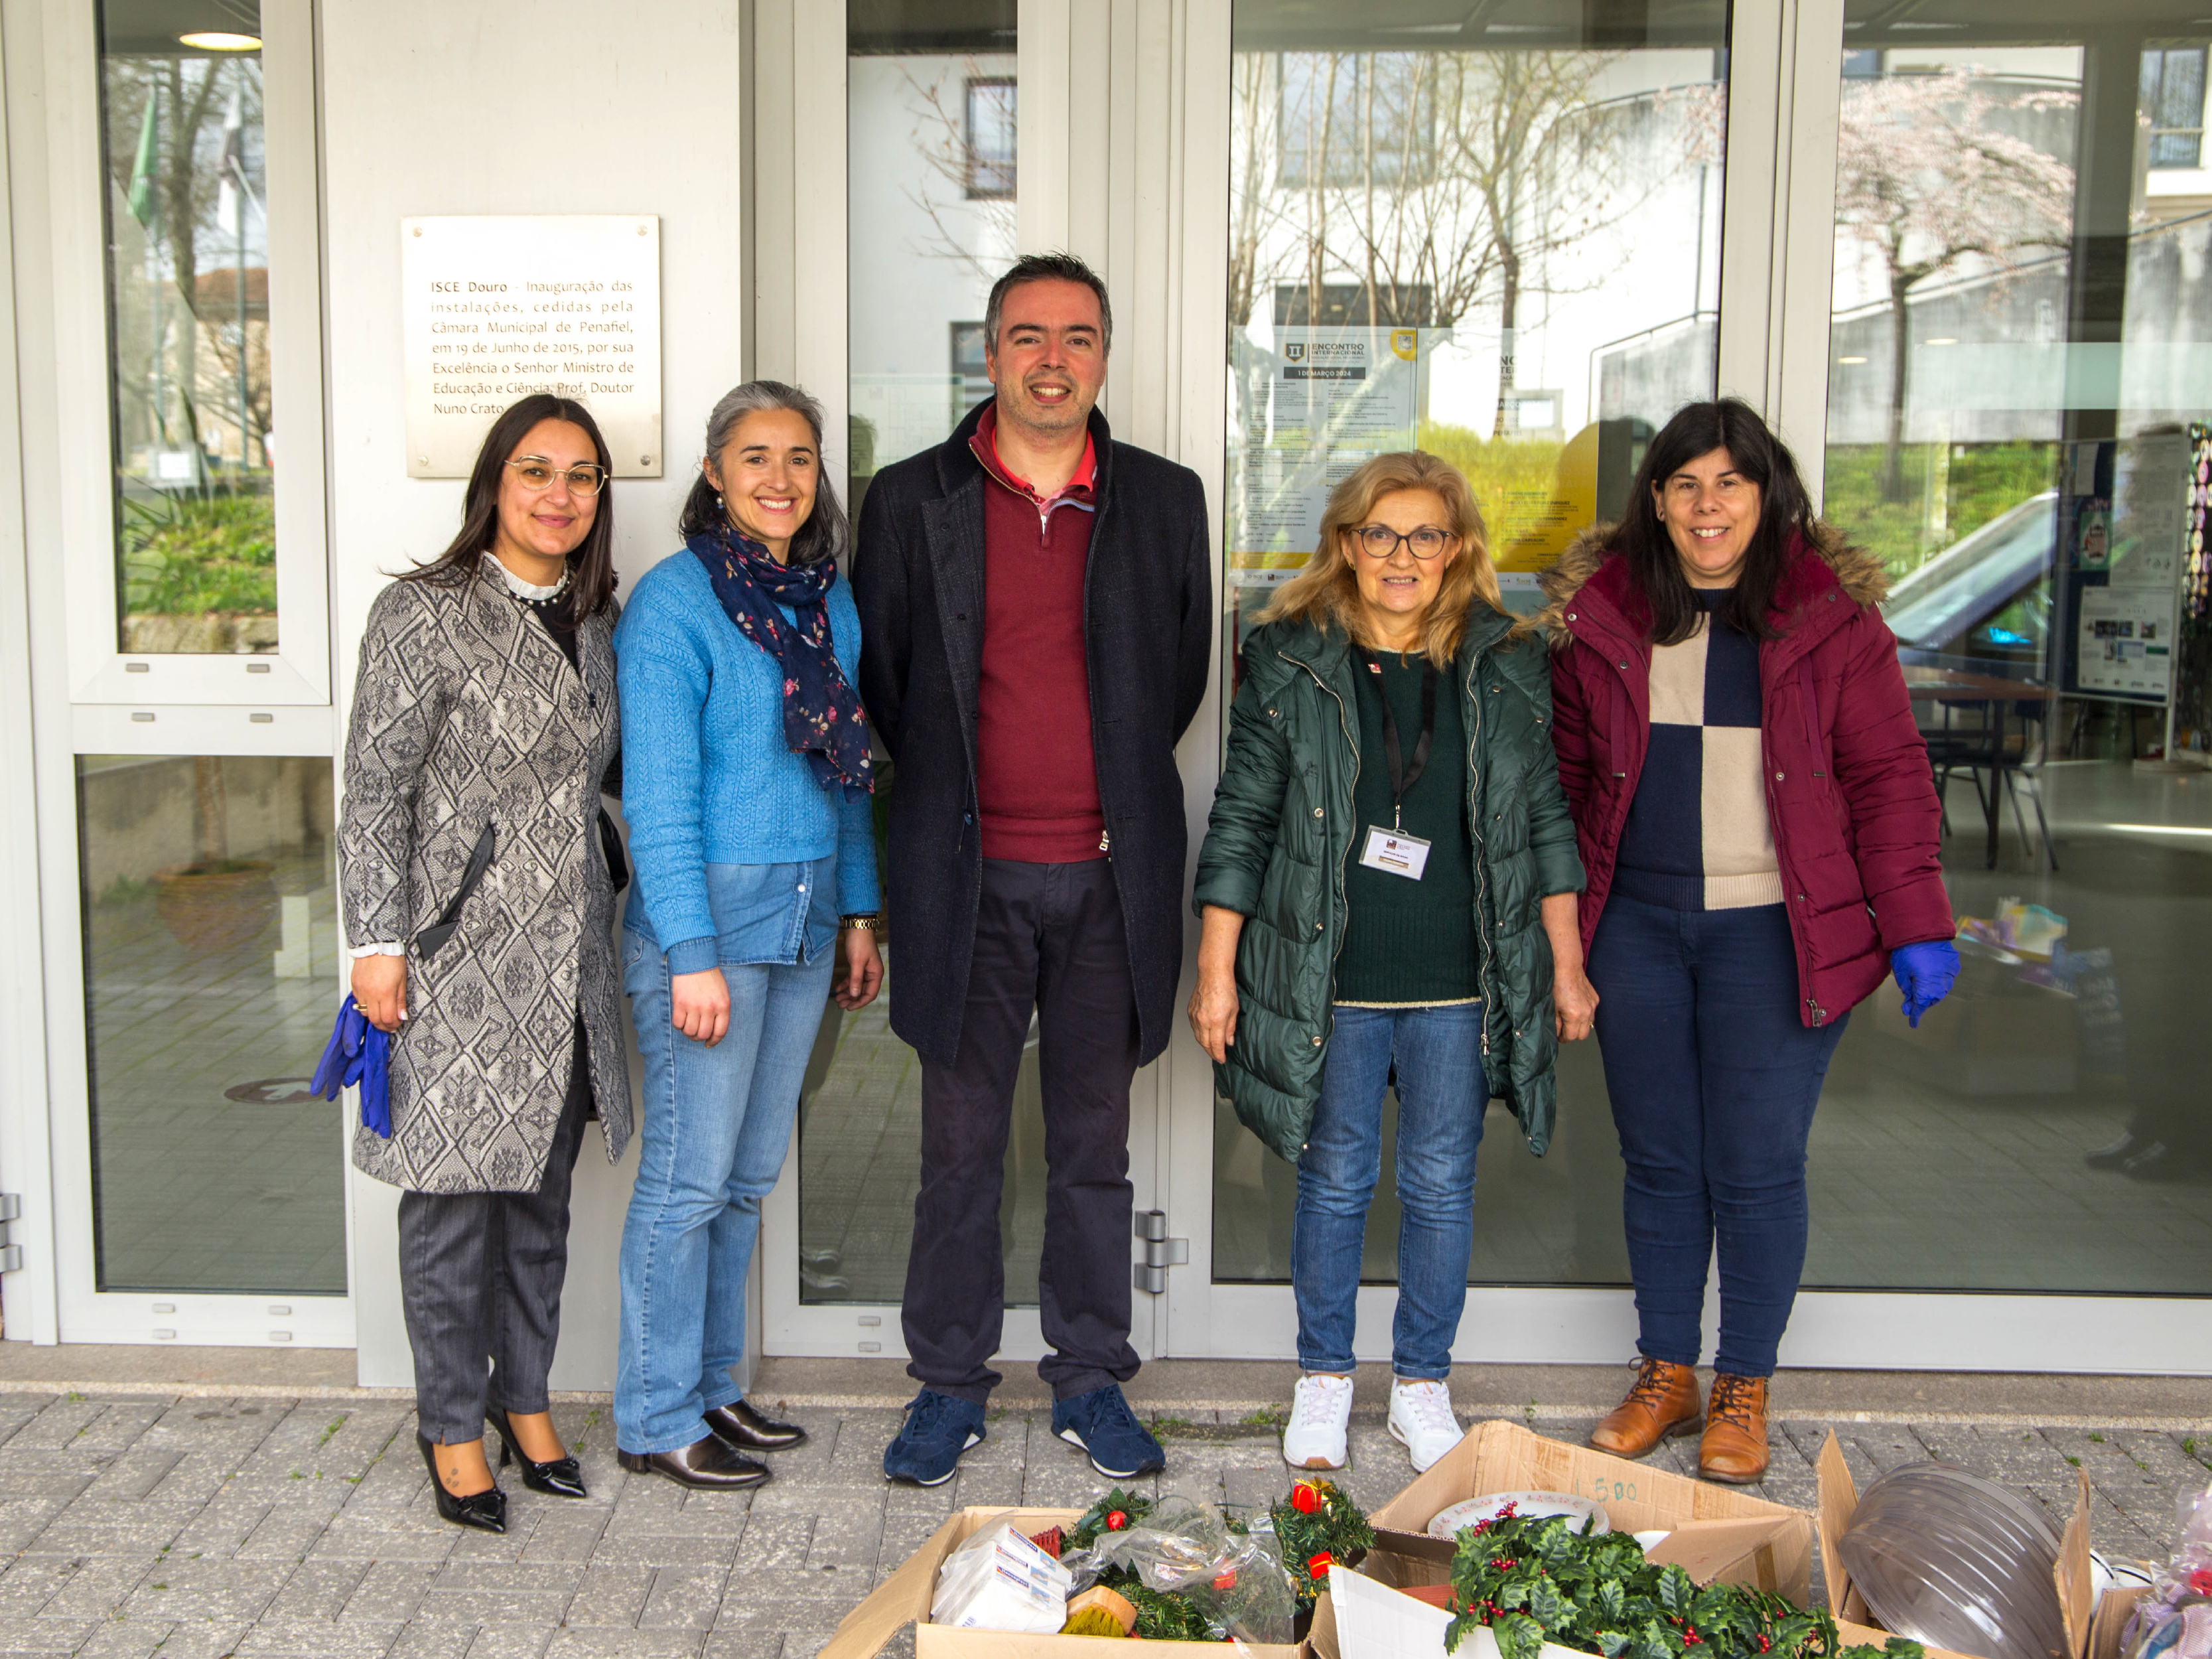 ISCE Douro promove a solidariedade através de Doações a Instituições Locais